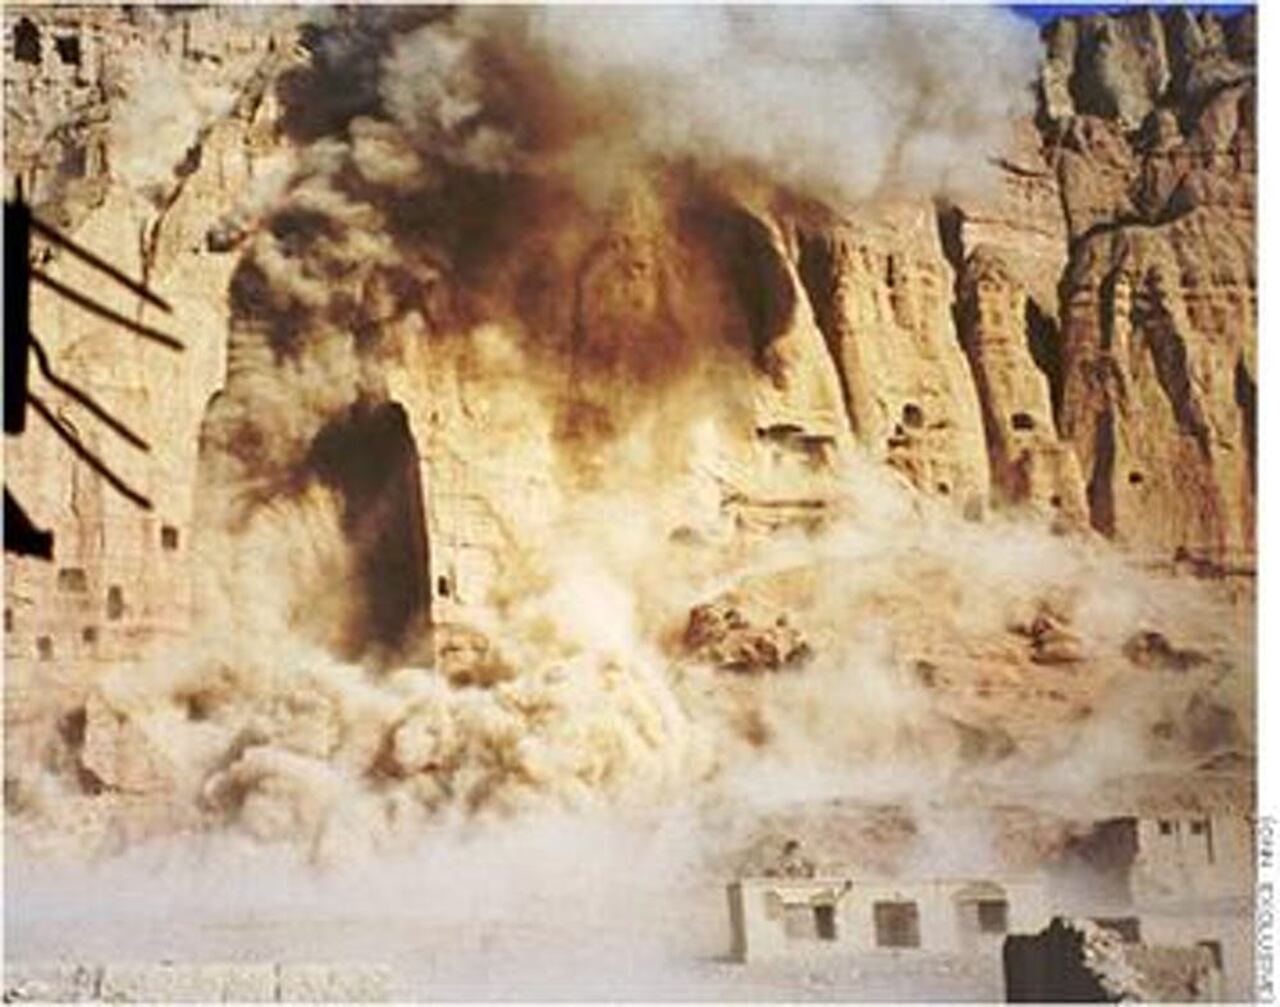 Imagen del momento de la destrucción de los Budas de Bamiyán el 21 de marzo de 2001 tomadas de la CNN. Wikimedia Commons / CNN